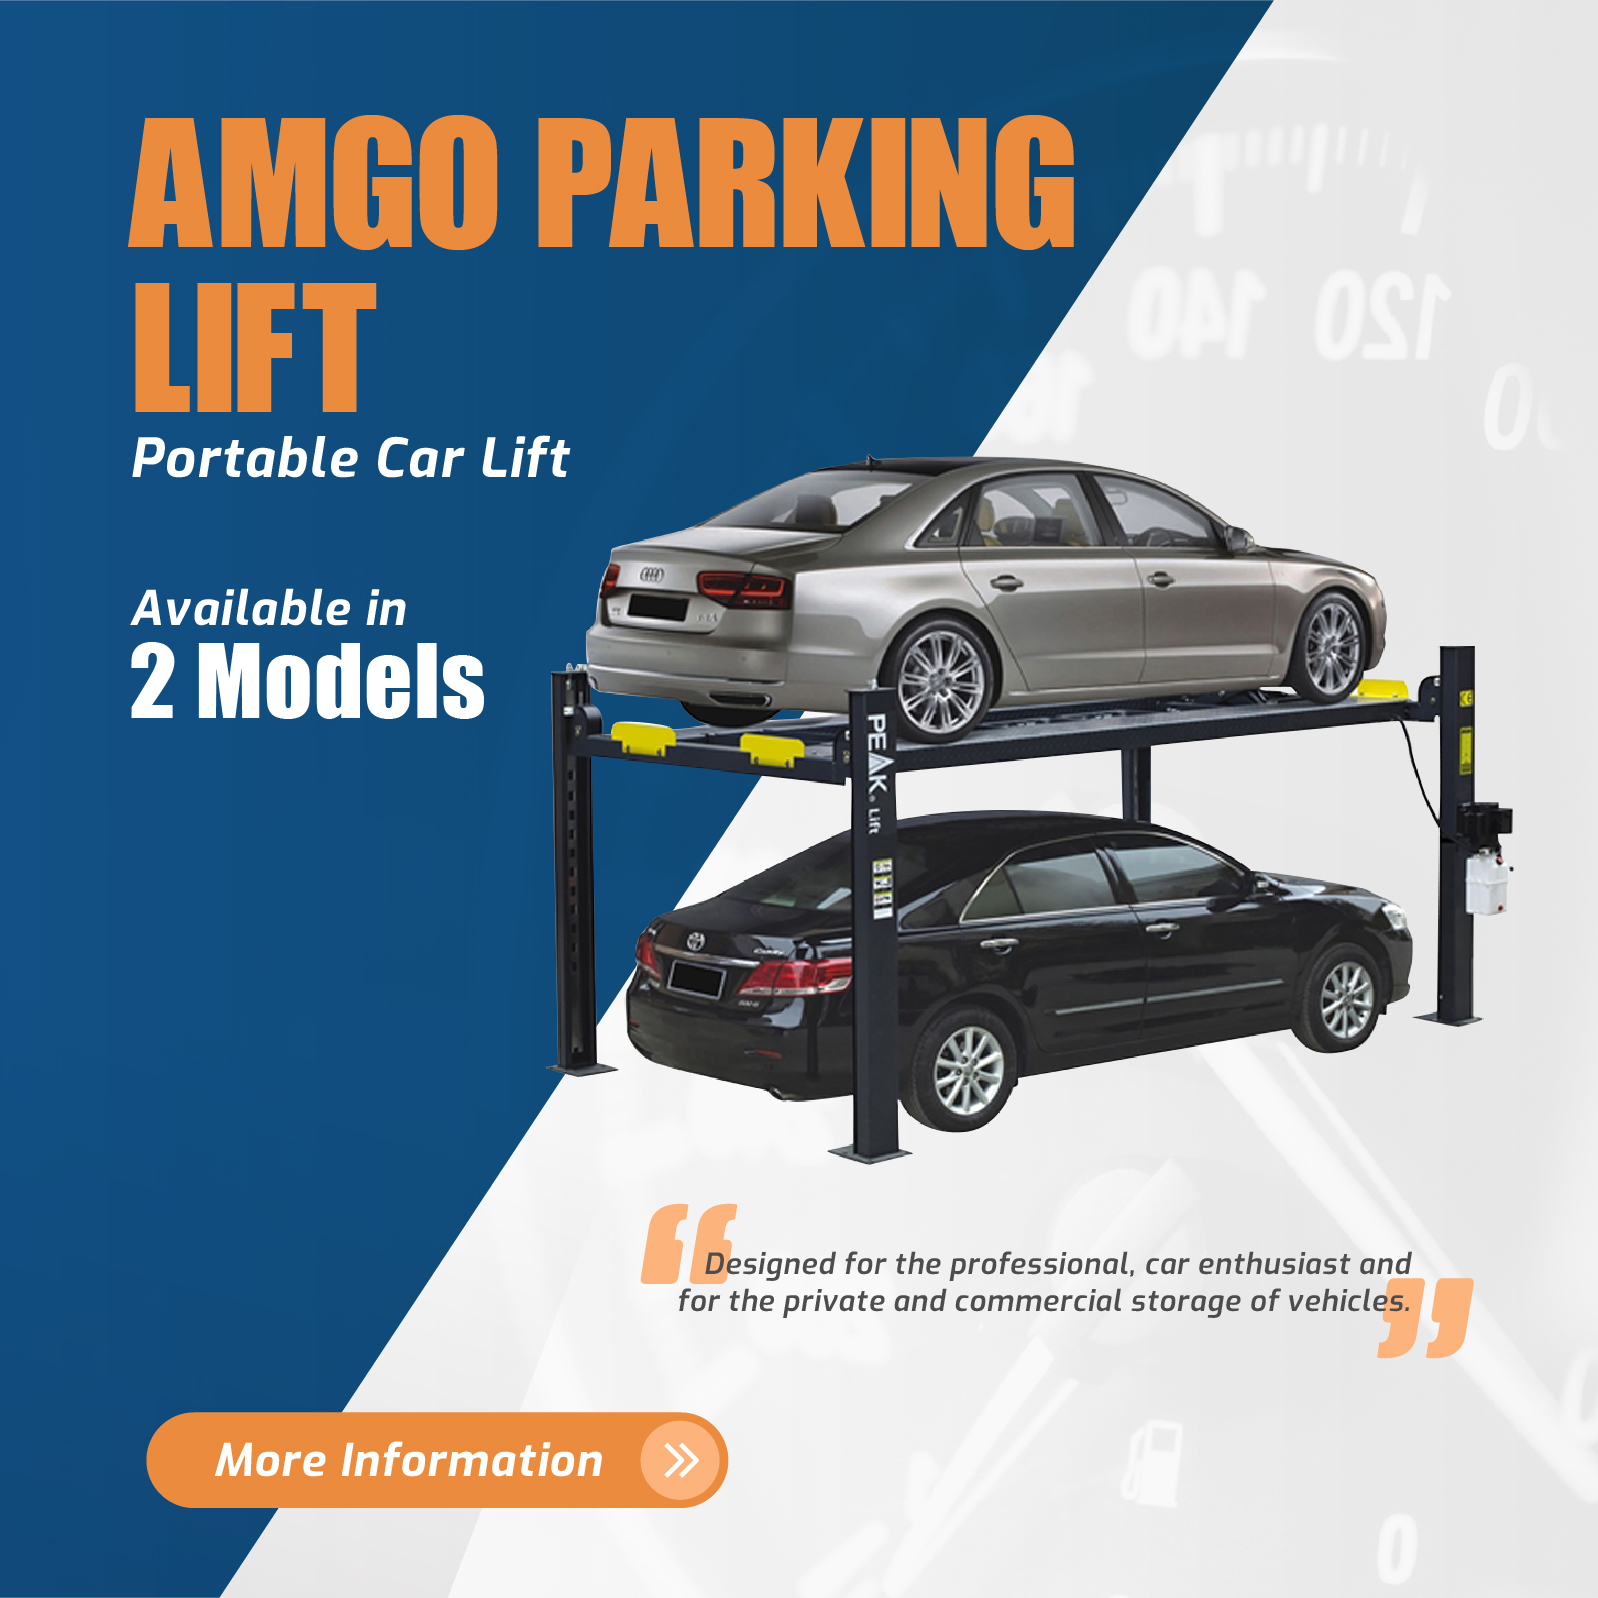 AMGO-parking-Lift